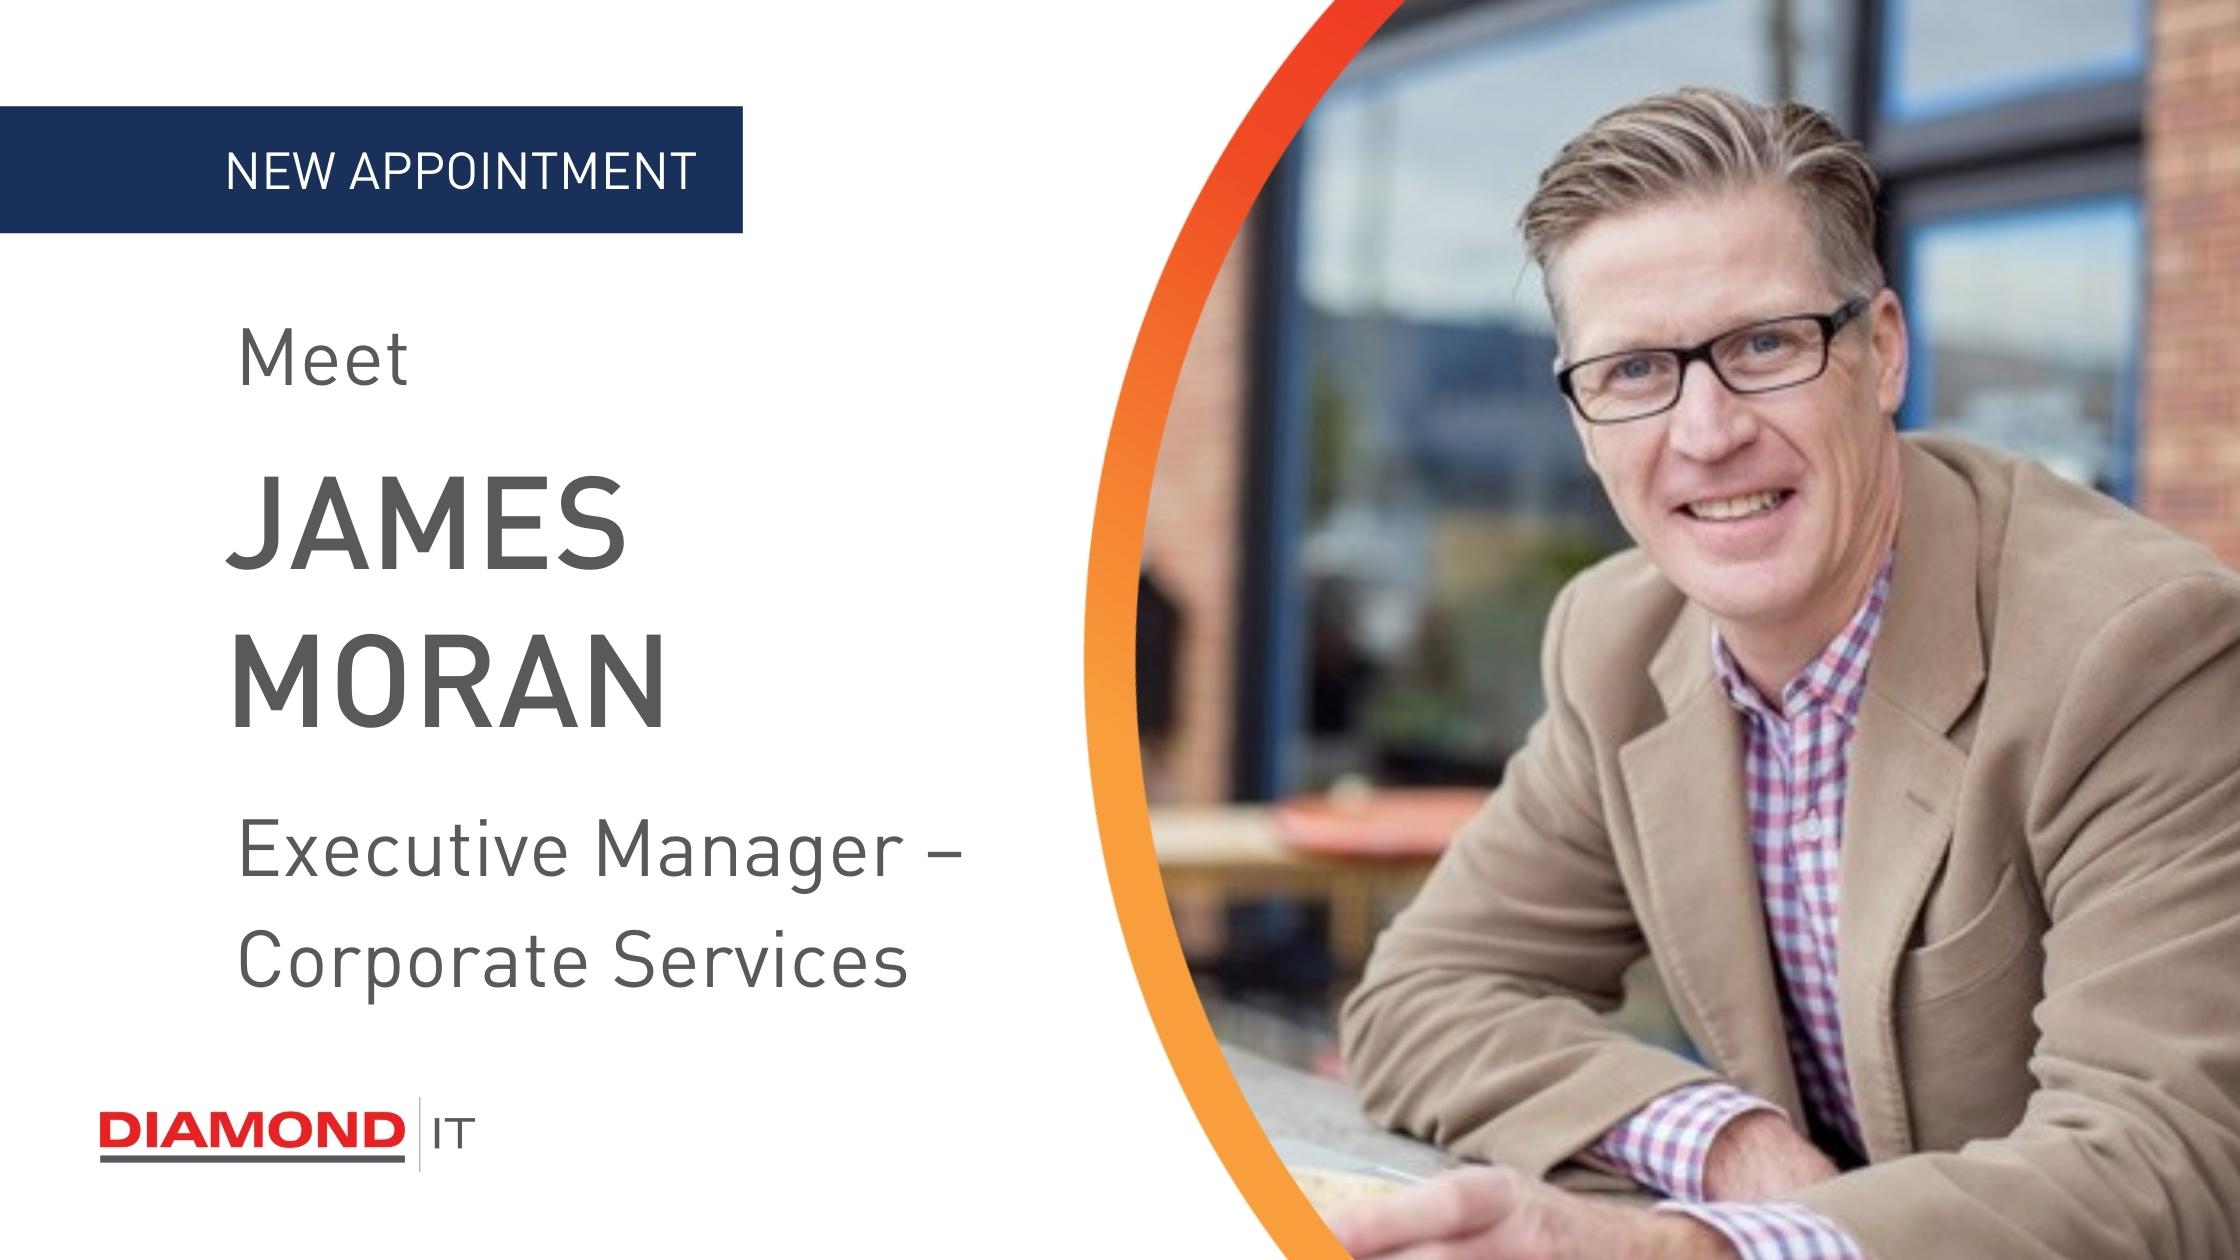 Meet our Executive Manager - James Moran